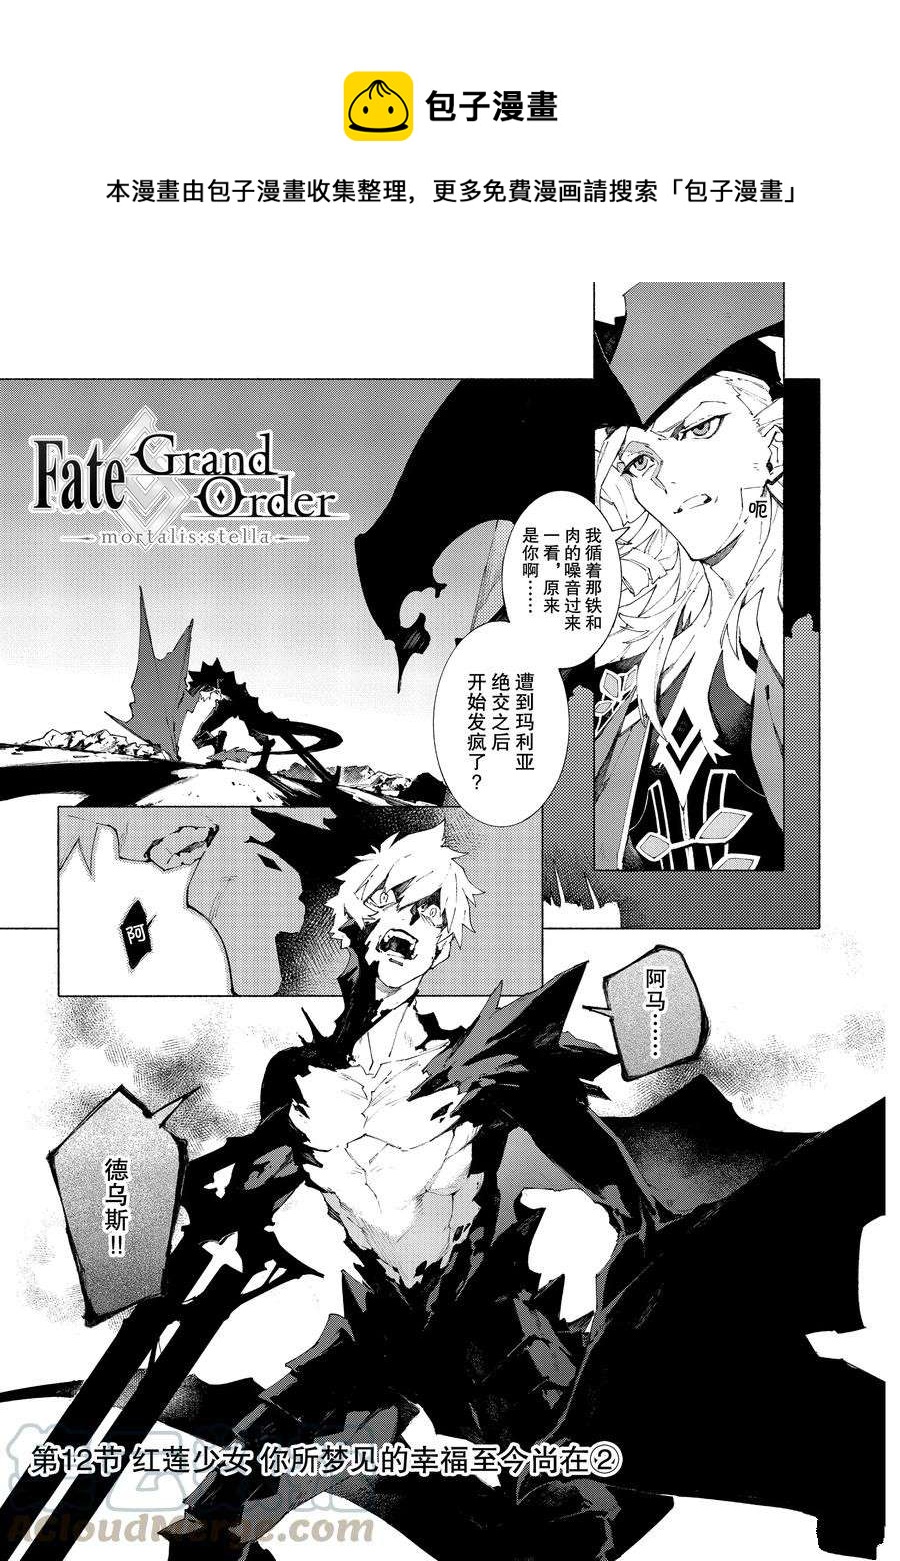 Fate Grand Order-mortalis:stella - 第12.2話 - 1